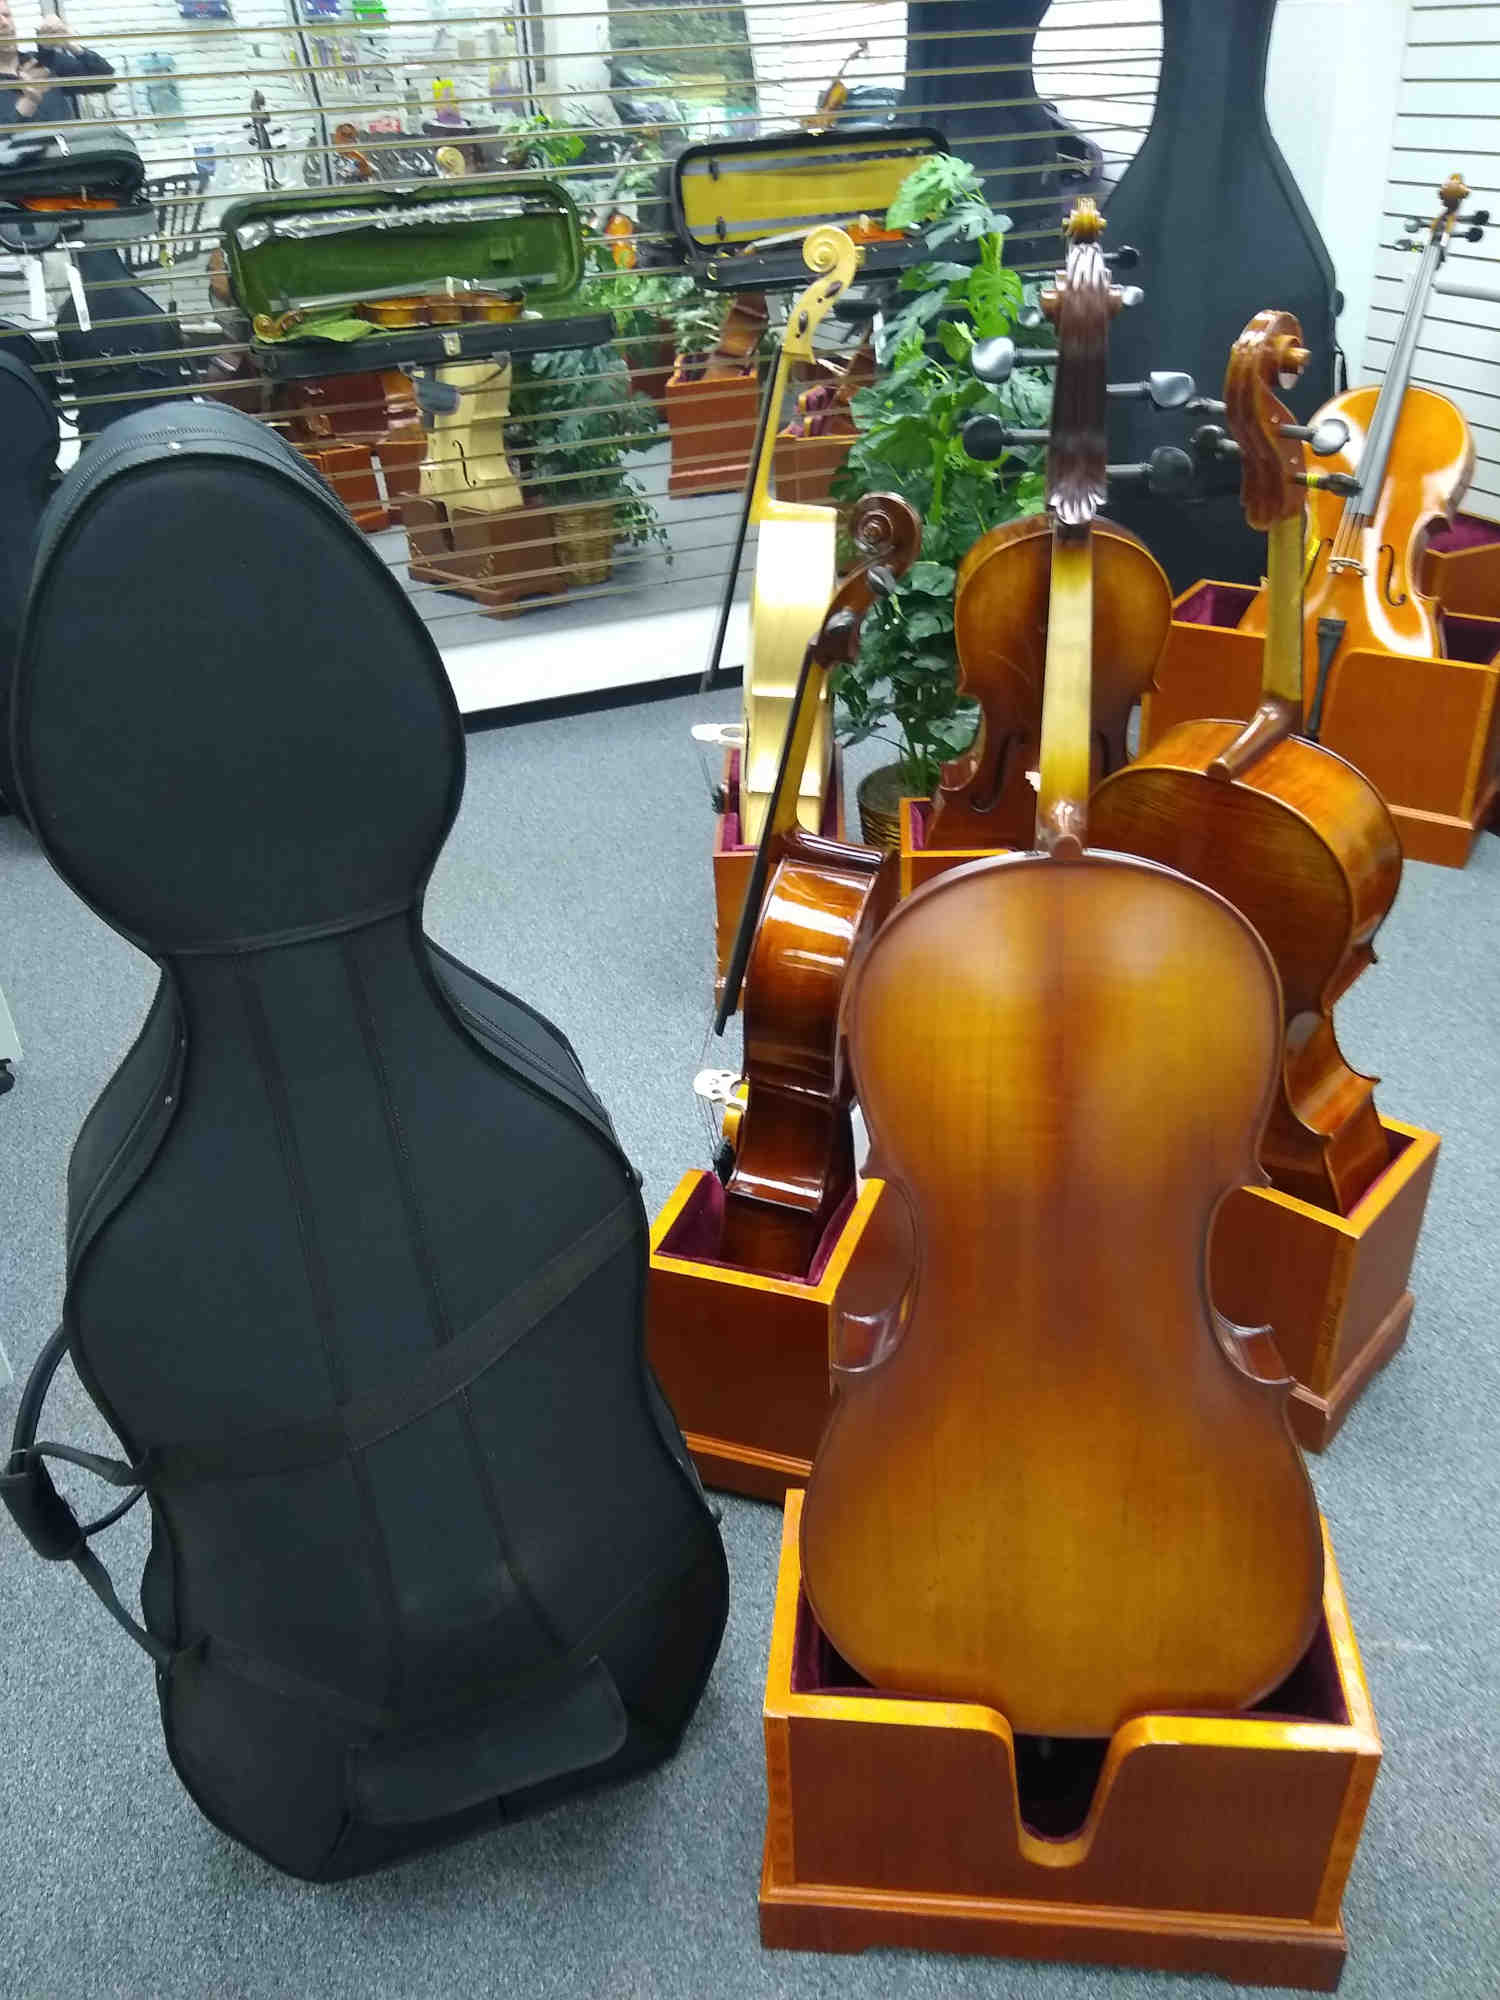 Hamburg Cello